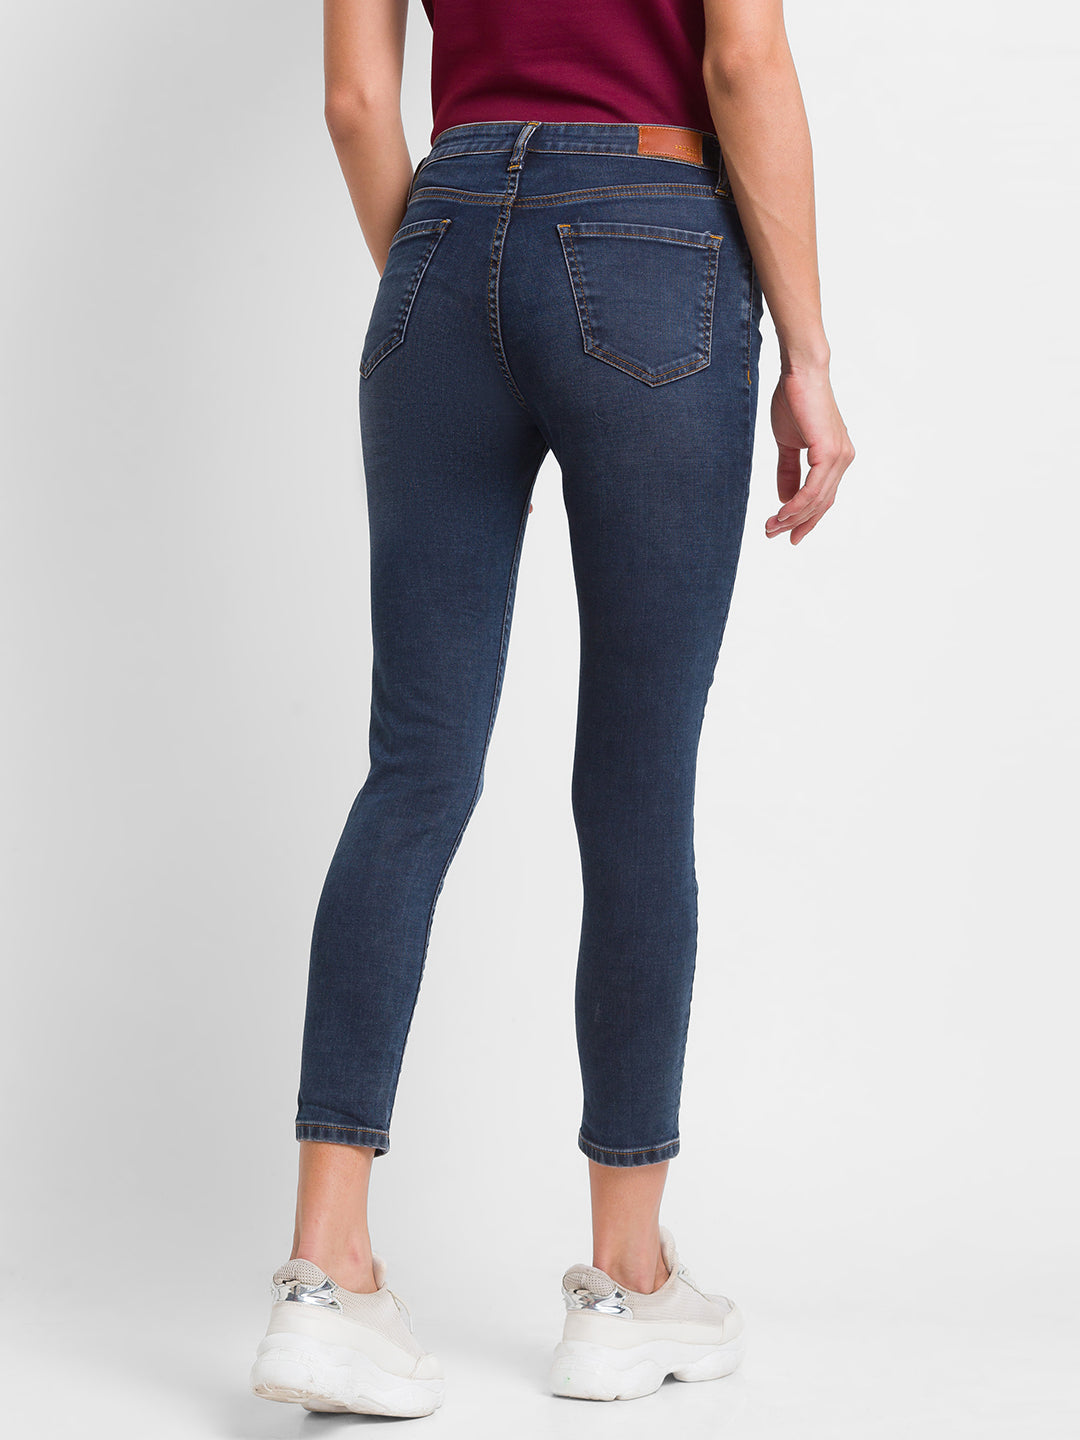 Spykar Dark Blue Lycra Super Skinny Ankle Length Jeans For Women (Alexa)